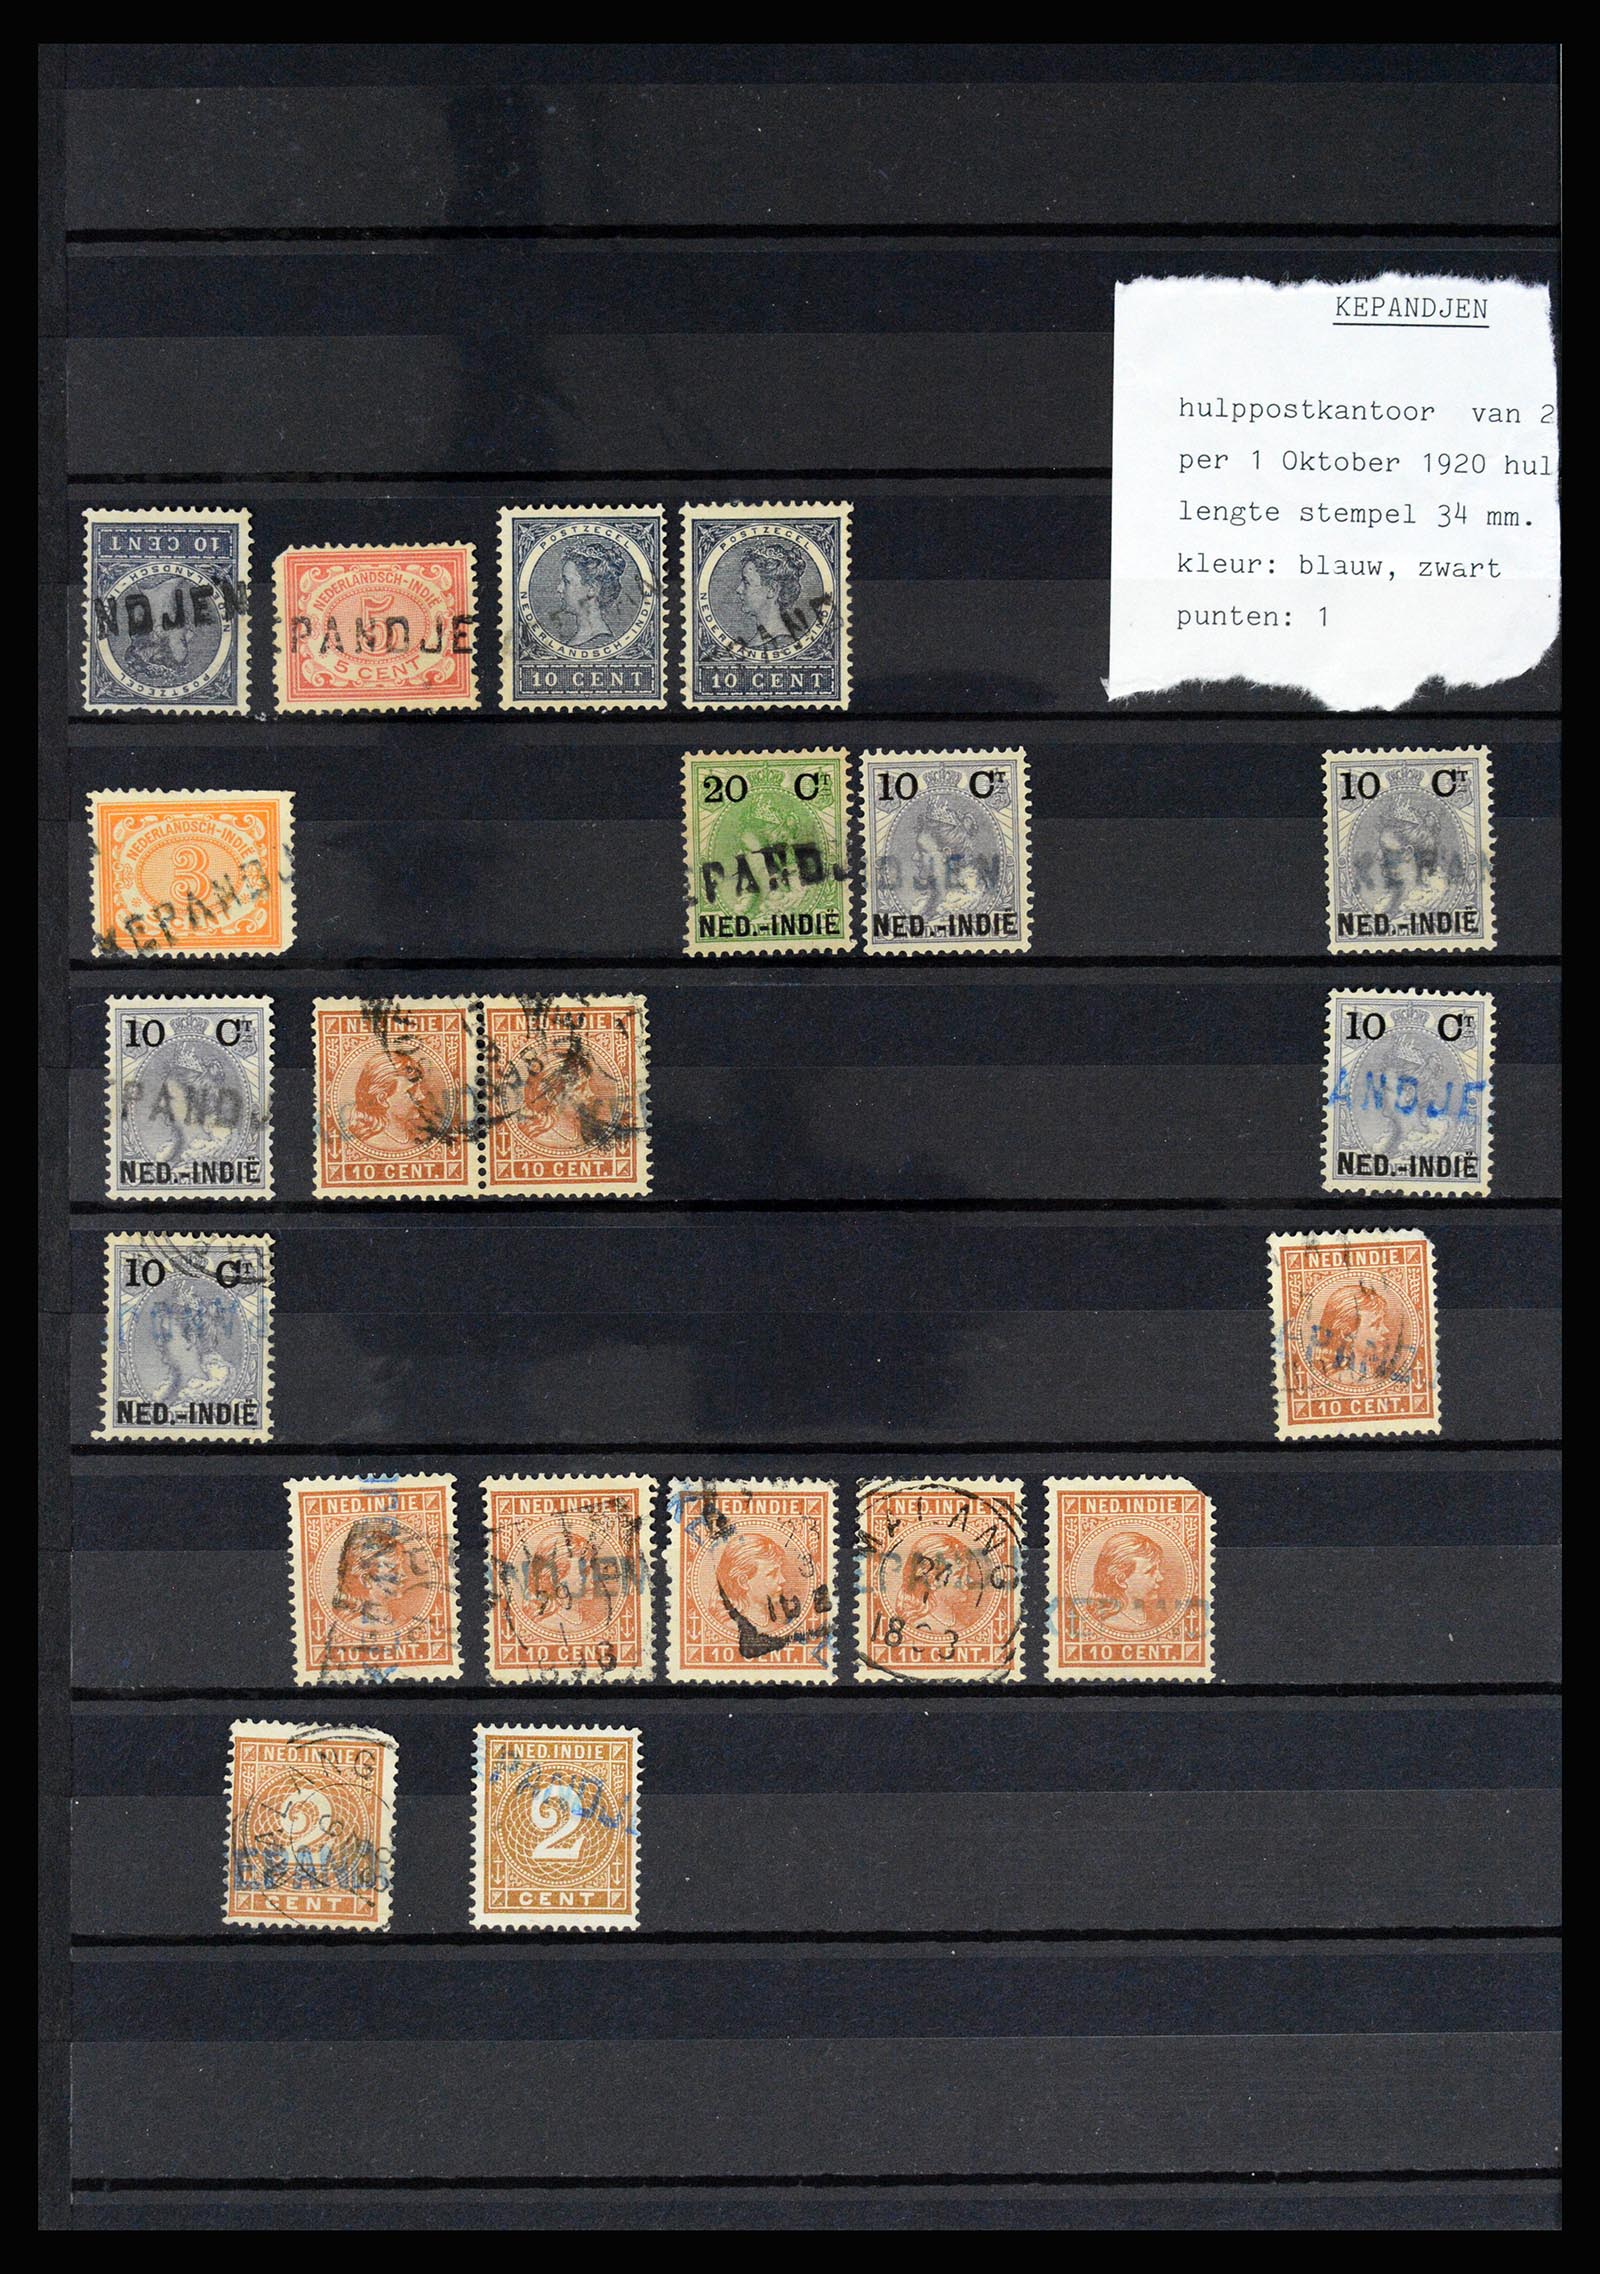 36512 032 - Stamp collection 36512 Nederlands Indië stempels 1872-1930.